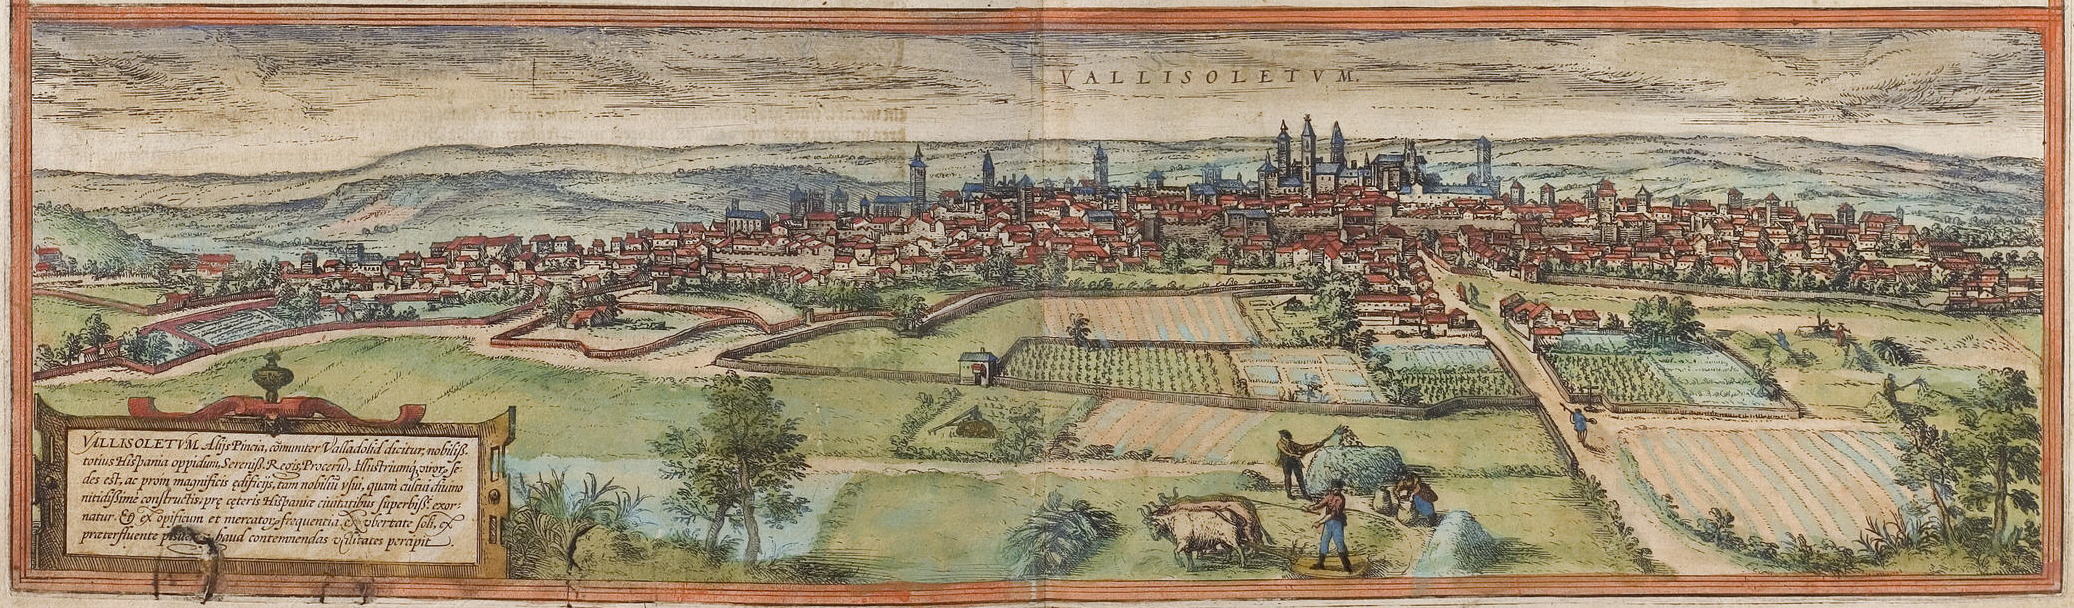 Grabado de Valladolid (1574) realizado por Braun y Hogenberg, perteneciente a la obra Civitates orbis terrarum